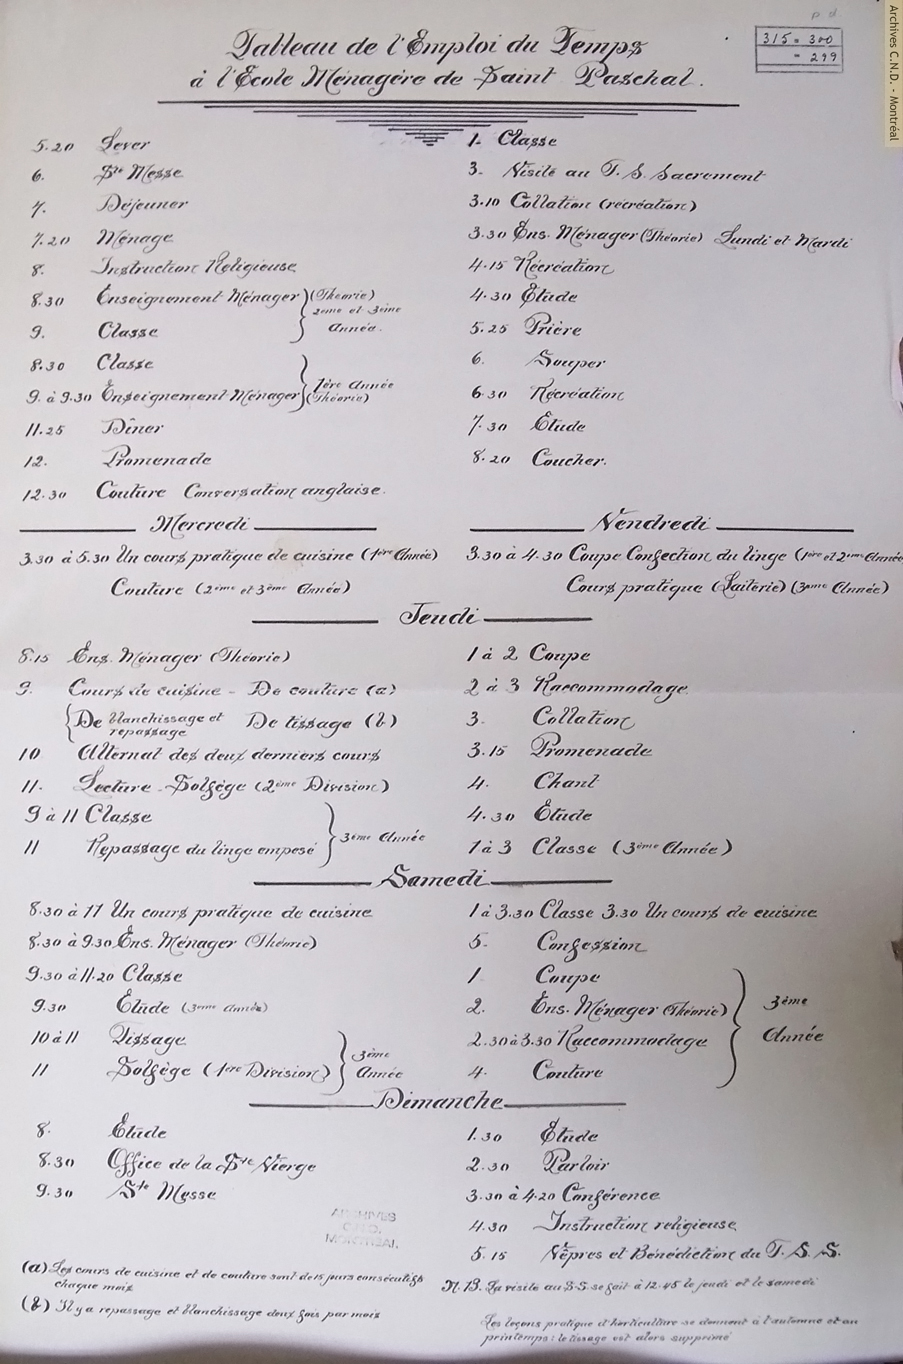 École normale classico-ménagère schedule